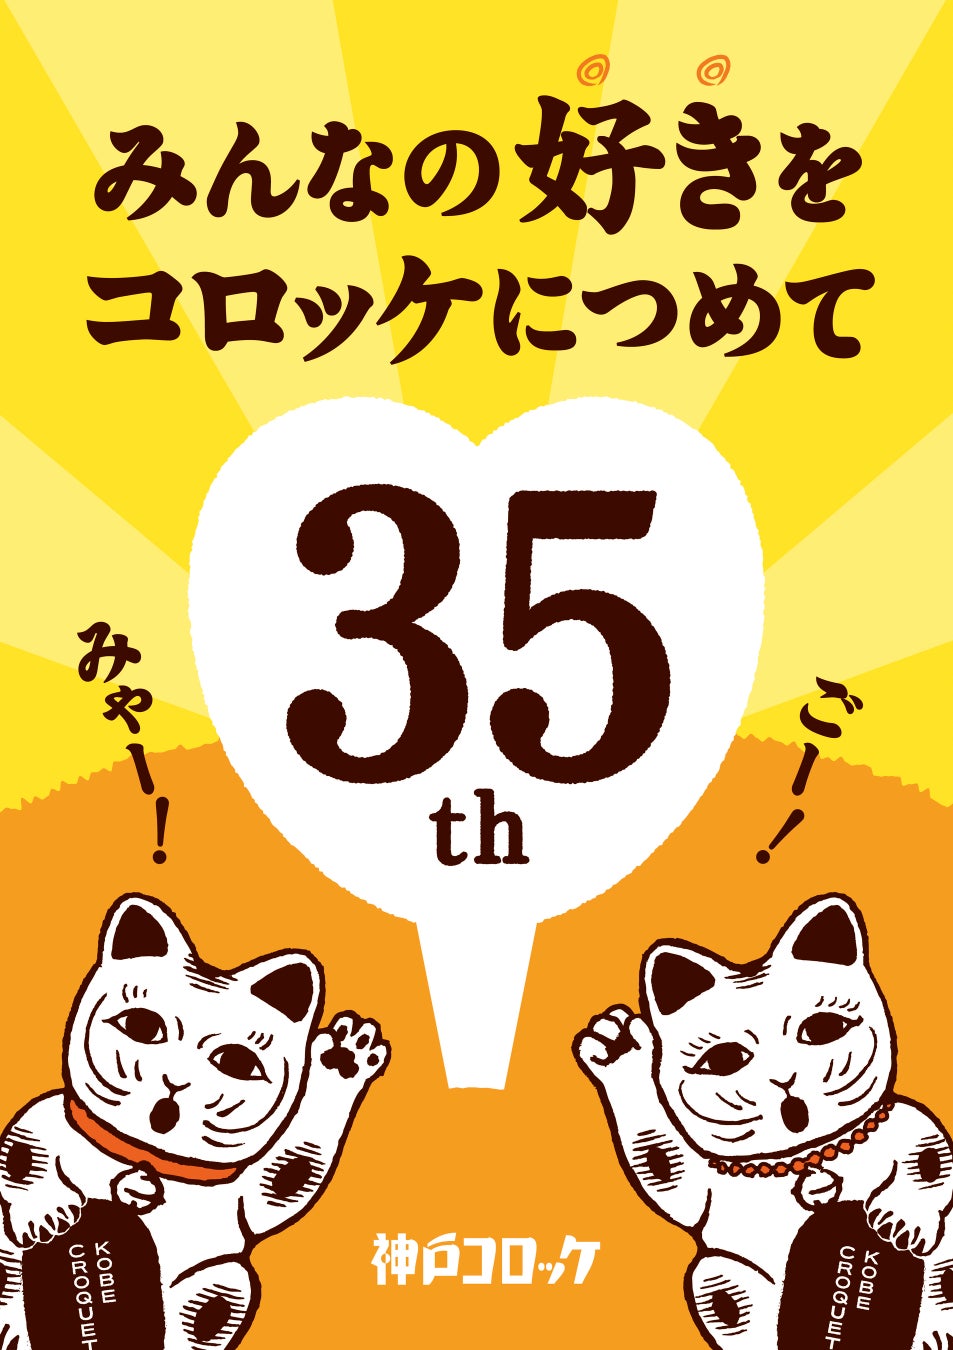 「にゃんこロッケ」や特別セットなどが登場！神戸コロッケ 35周年感謝祭